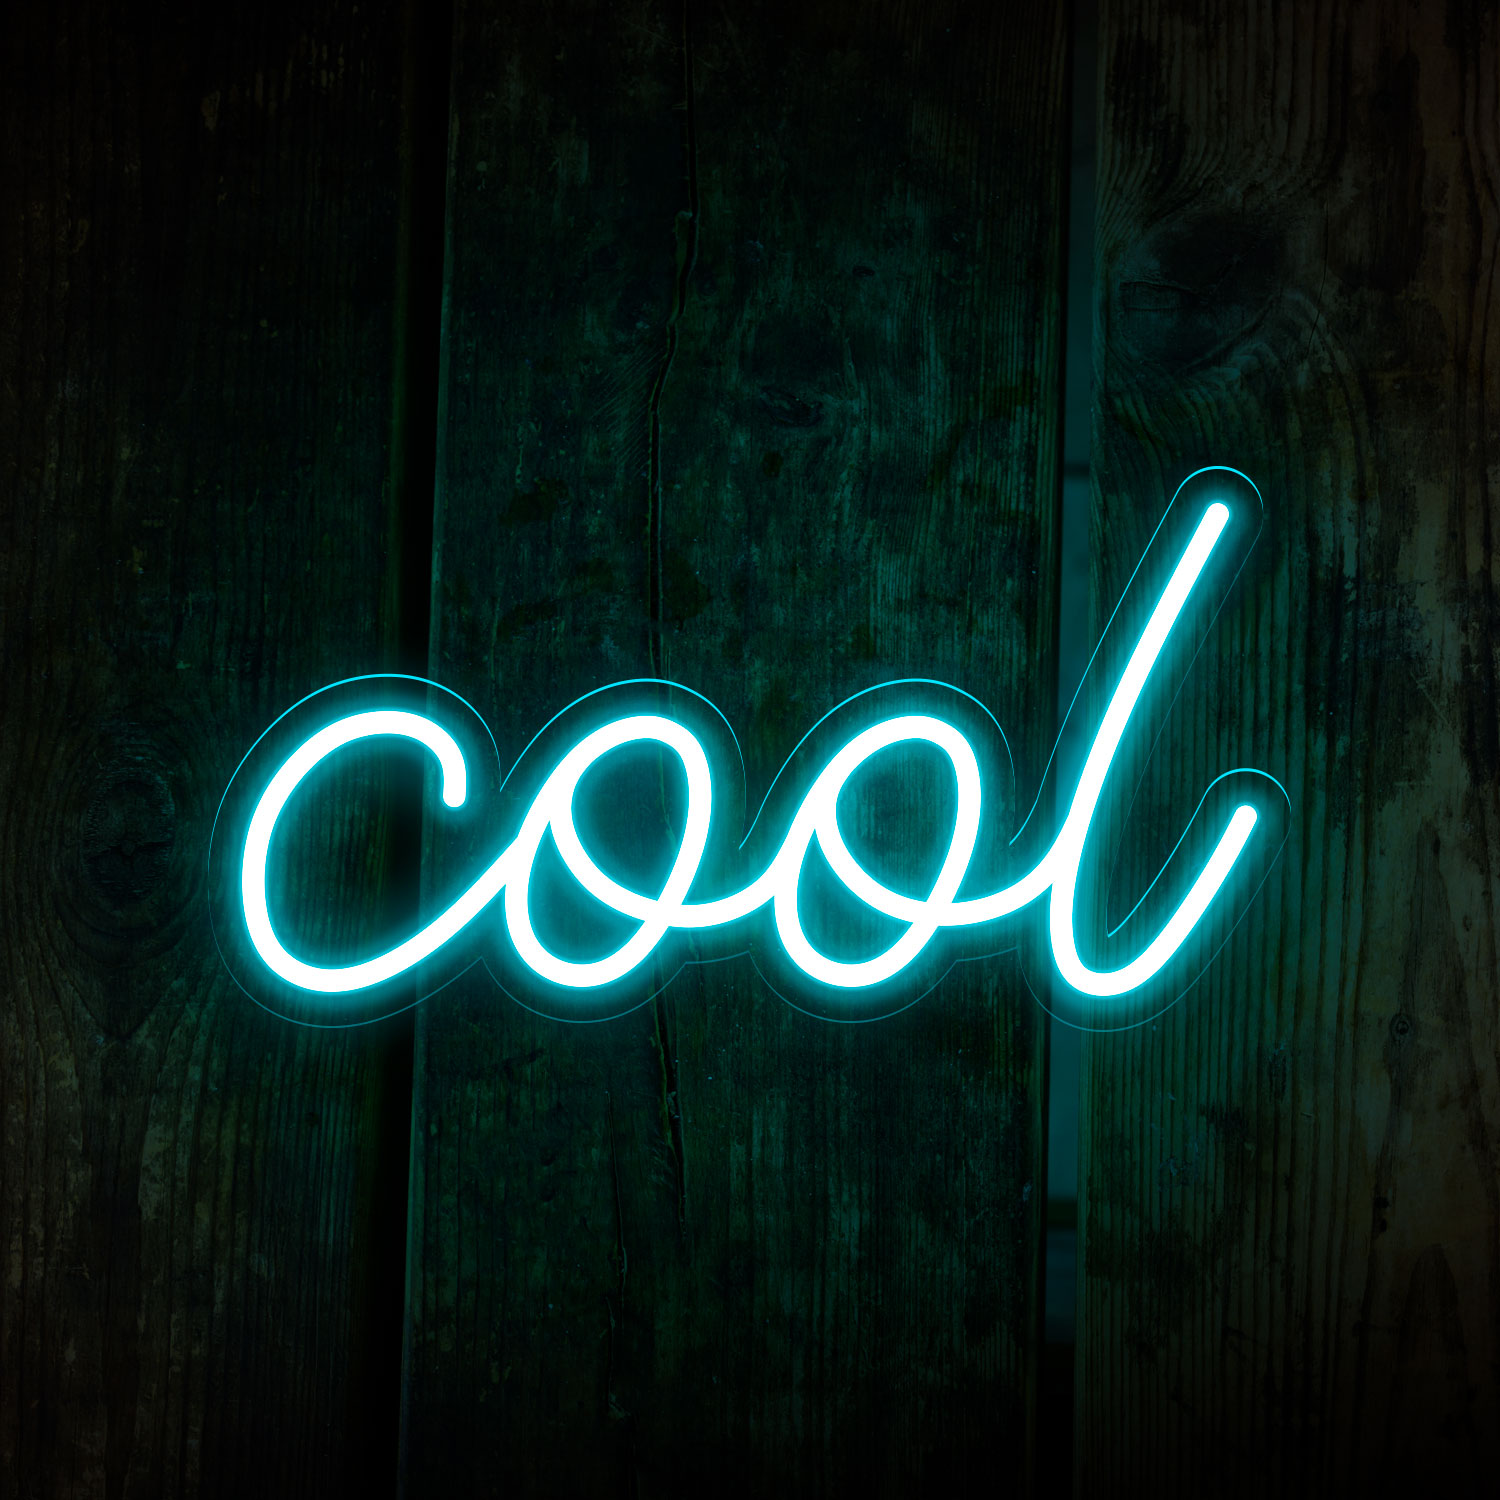 Immagine di Neon economico "Cool"